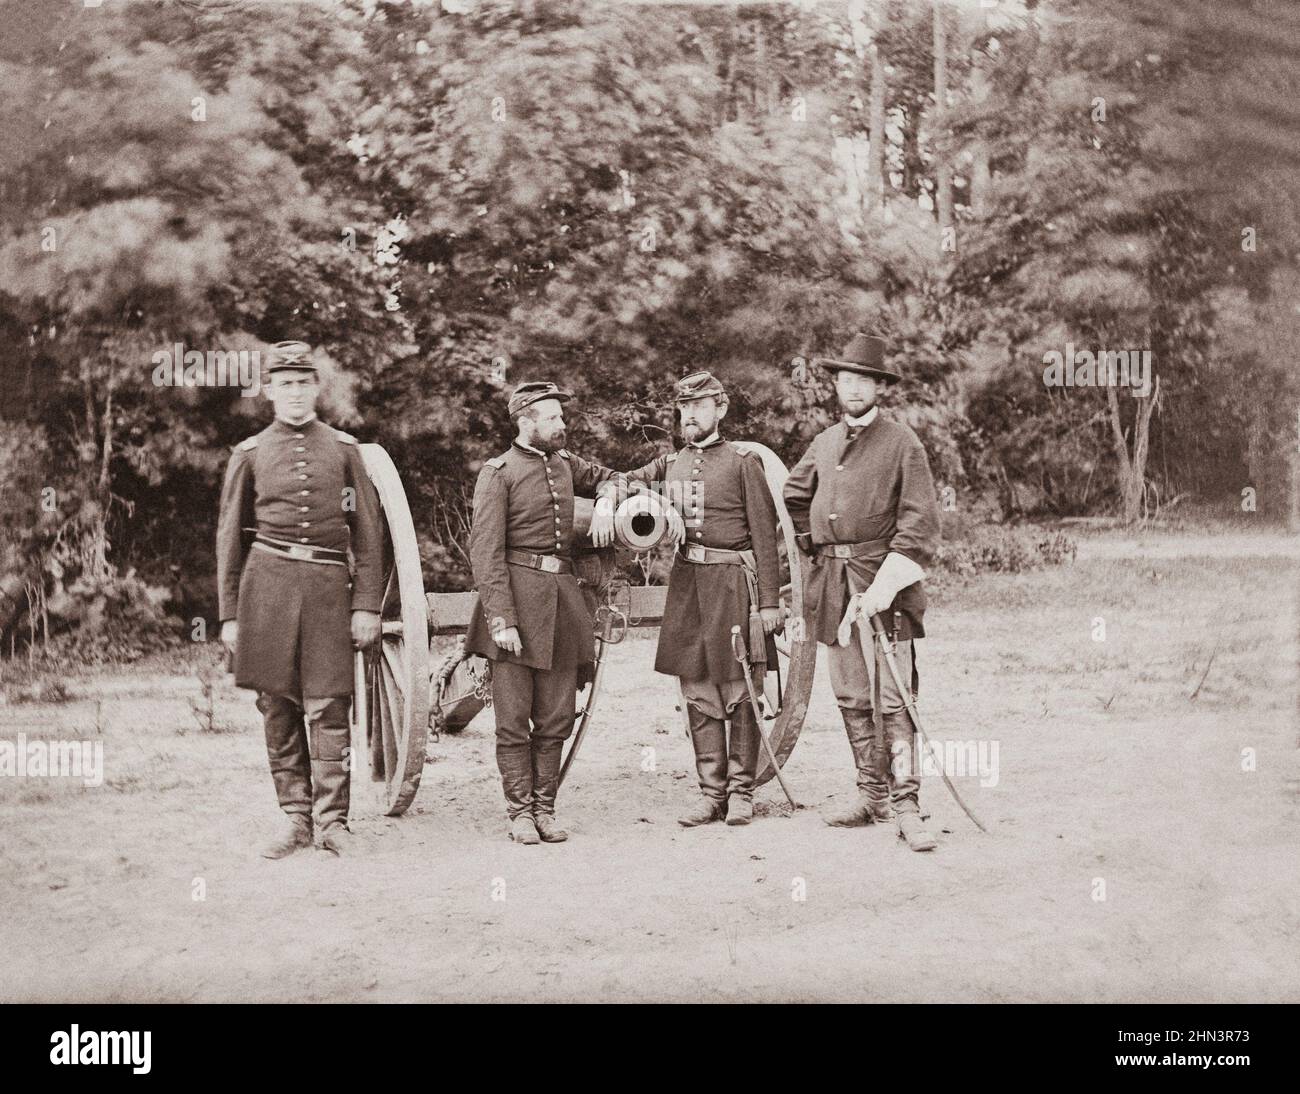 Amerikanischer Bürgerkrieg. Fair Oaks, Virginia. Kapitän Horatio G. Gibson (zweiter von links) und Offiziere seiner Batterie. Fotografie aus dem östlichen Hauptt Stockfoto